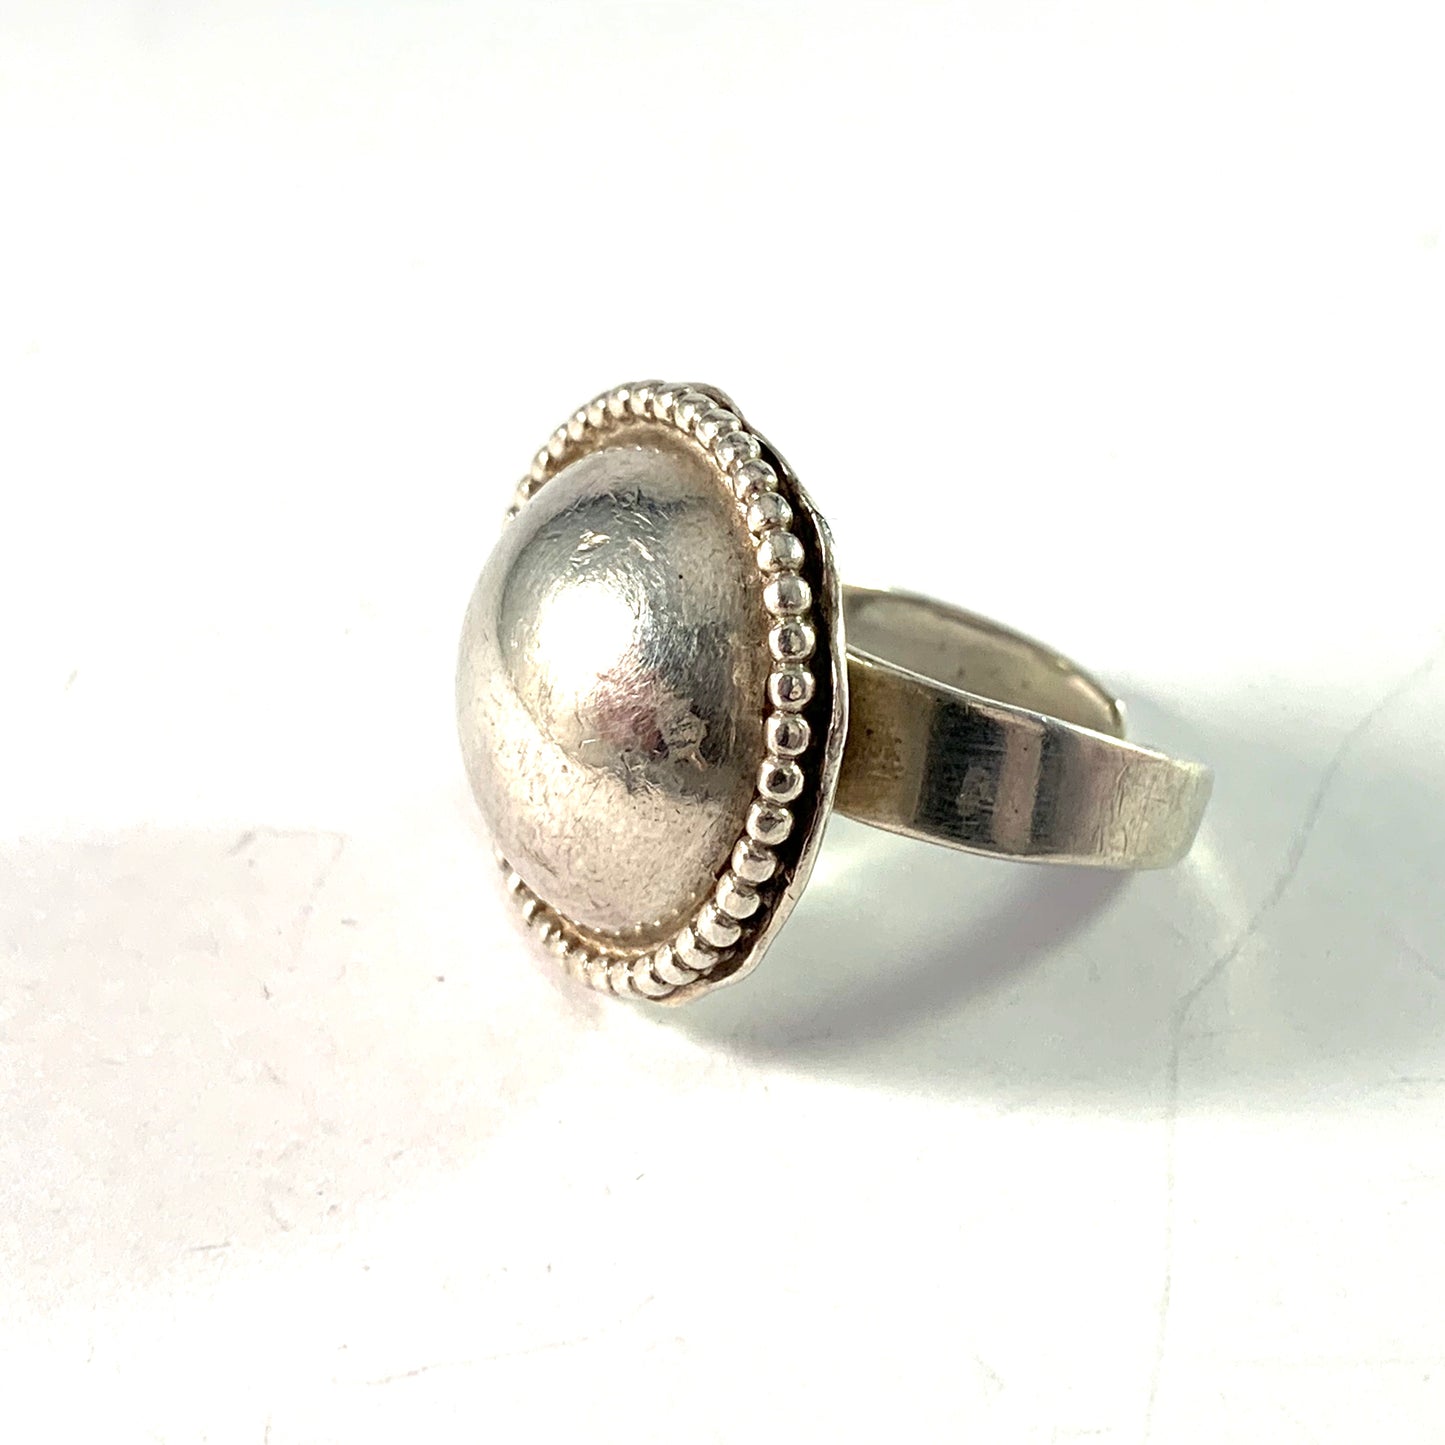 Owe Johansson, Sweden. Vintage Sterling Silver Ring. Signed